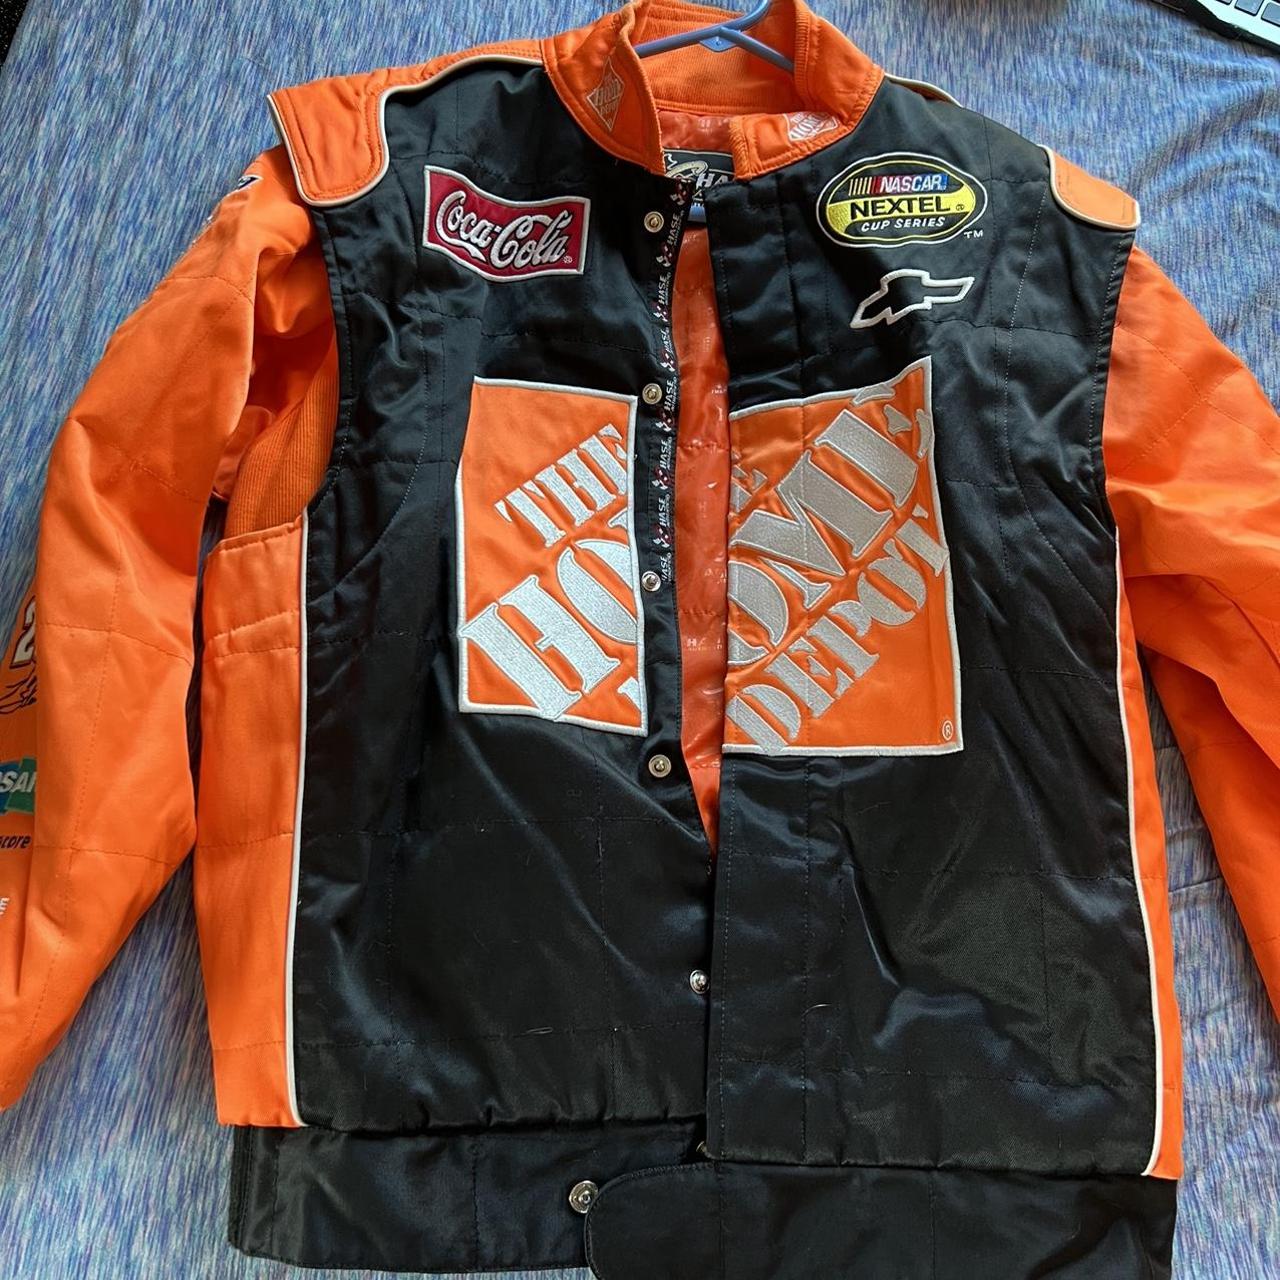 Tony Stewart NASCAR jacket (orange and black